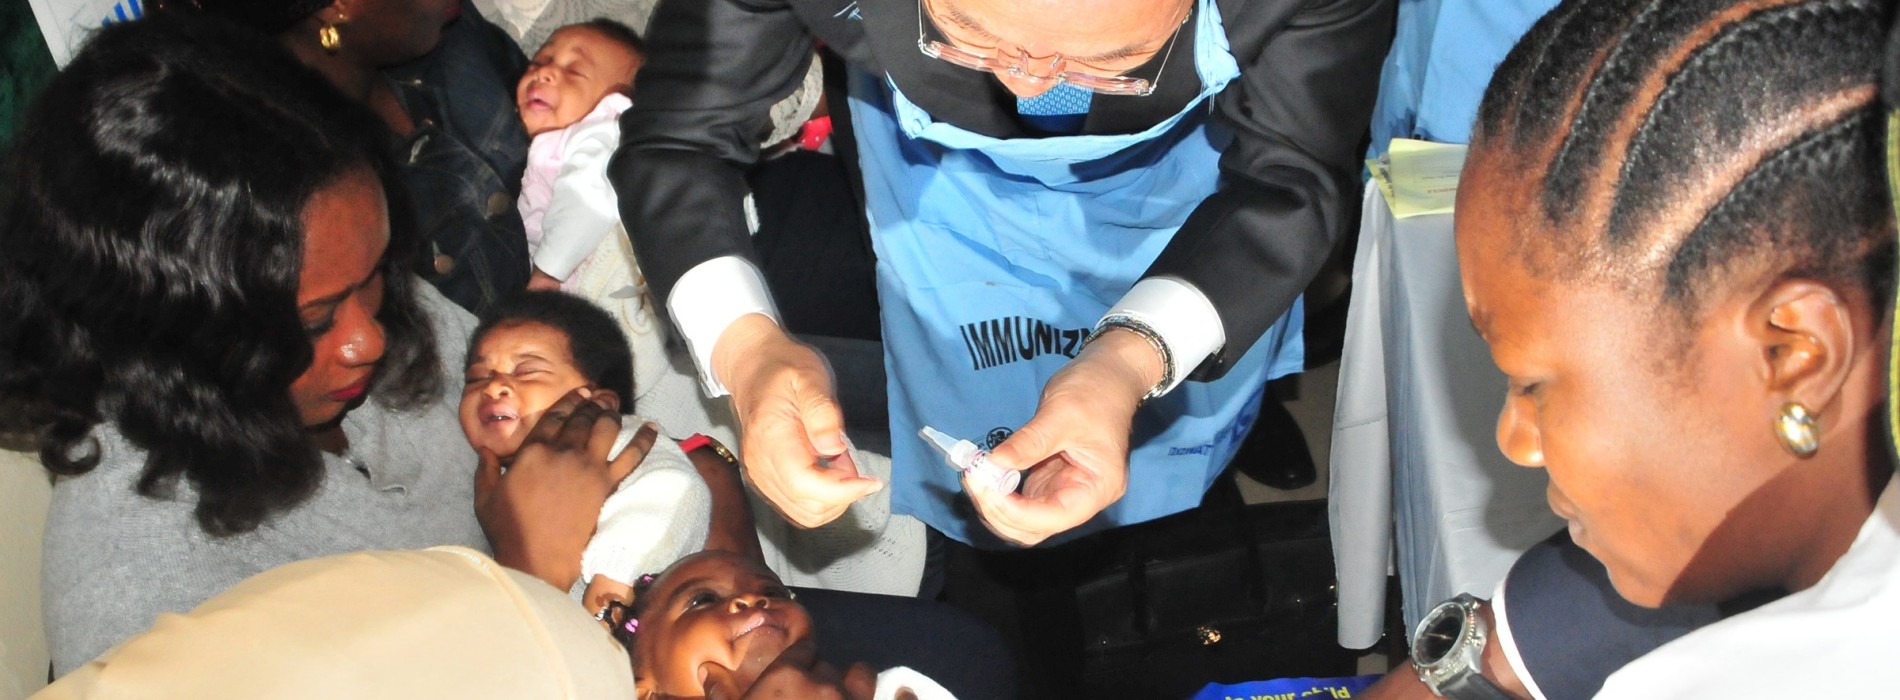 Ban Ki-moon commends Nigeria on polio